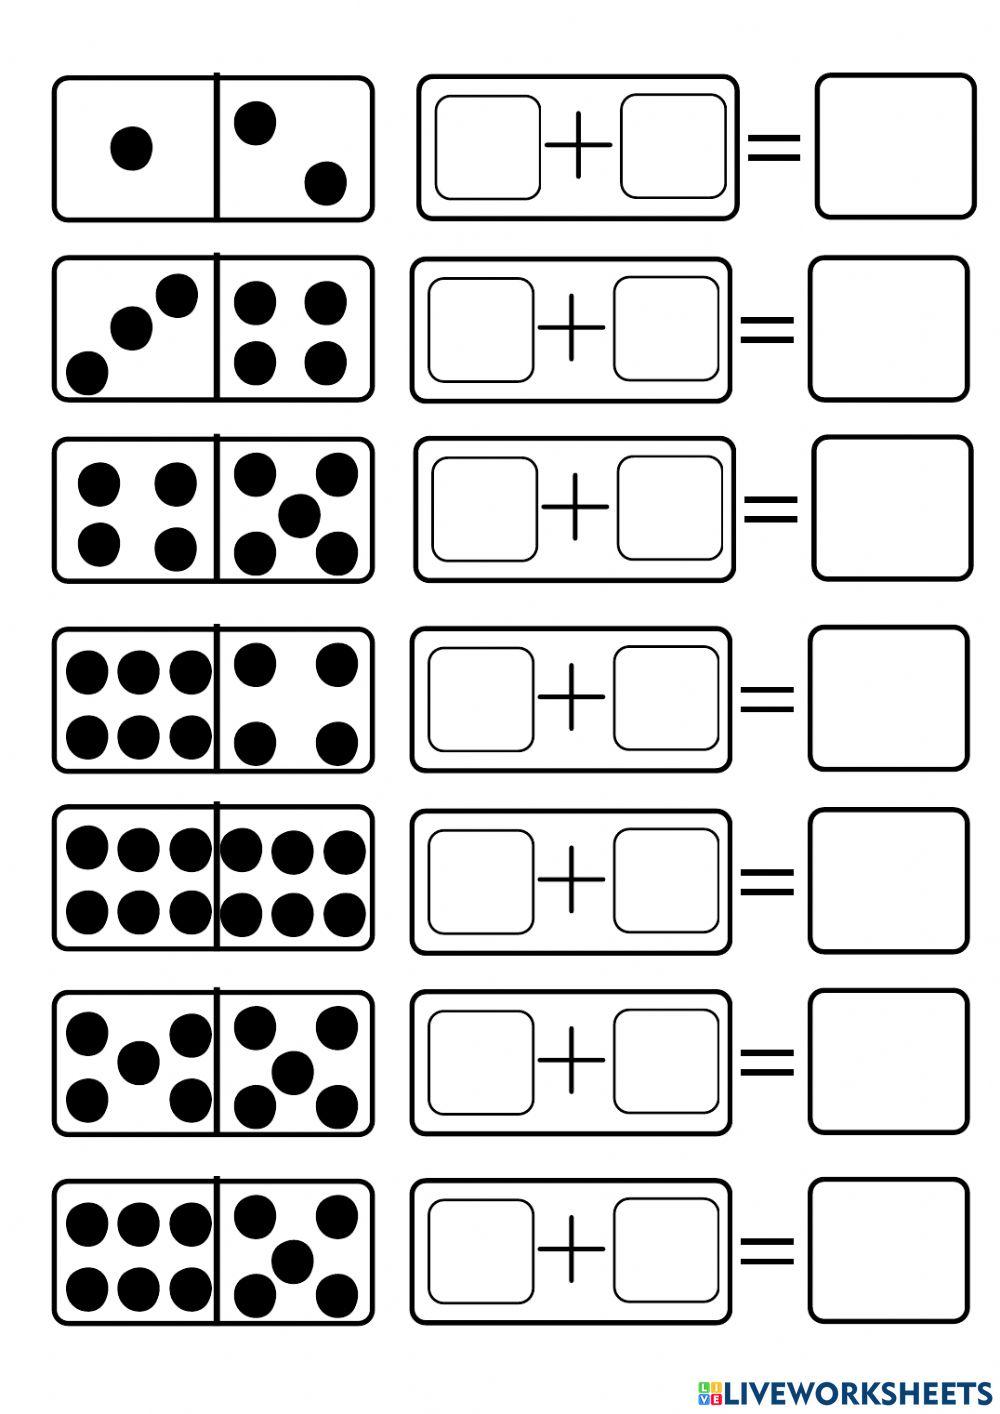 Yuk Jumlah Dot yang ada di kartu domino ini